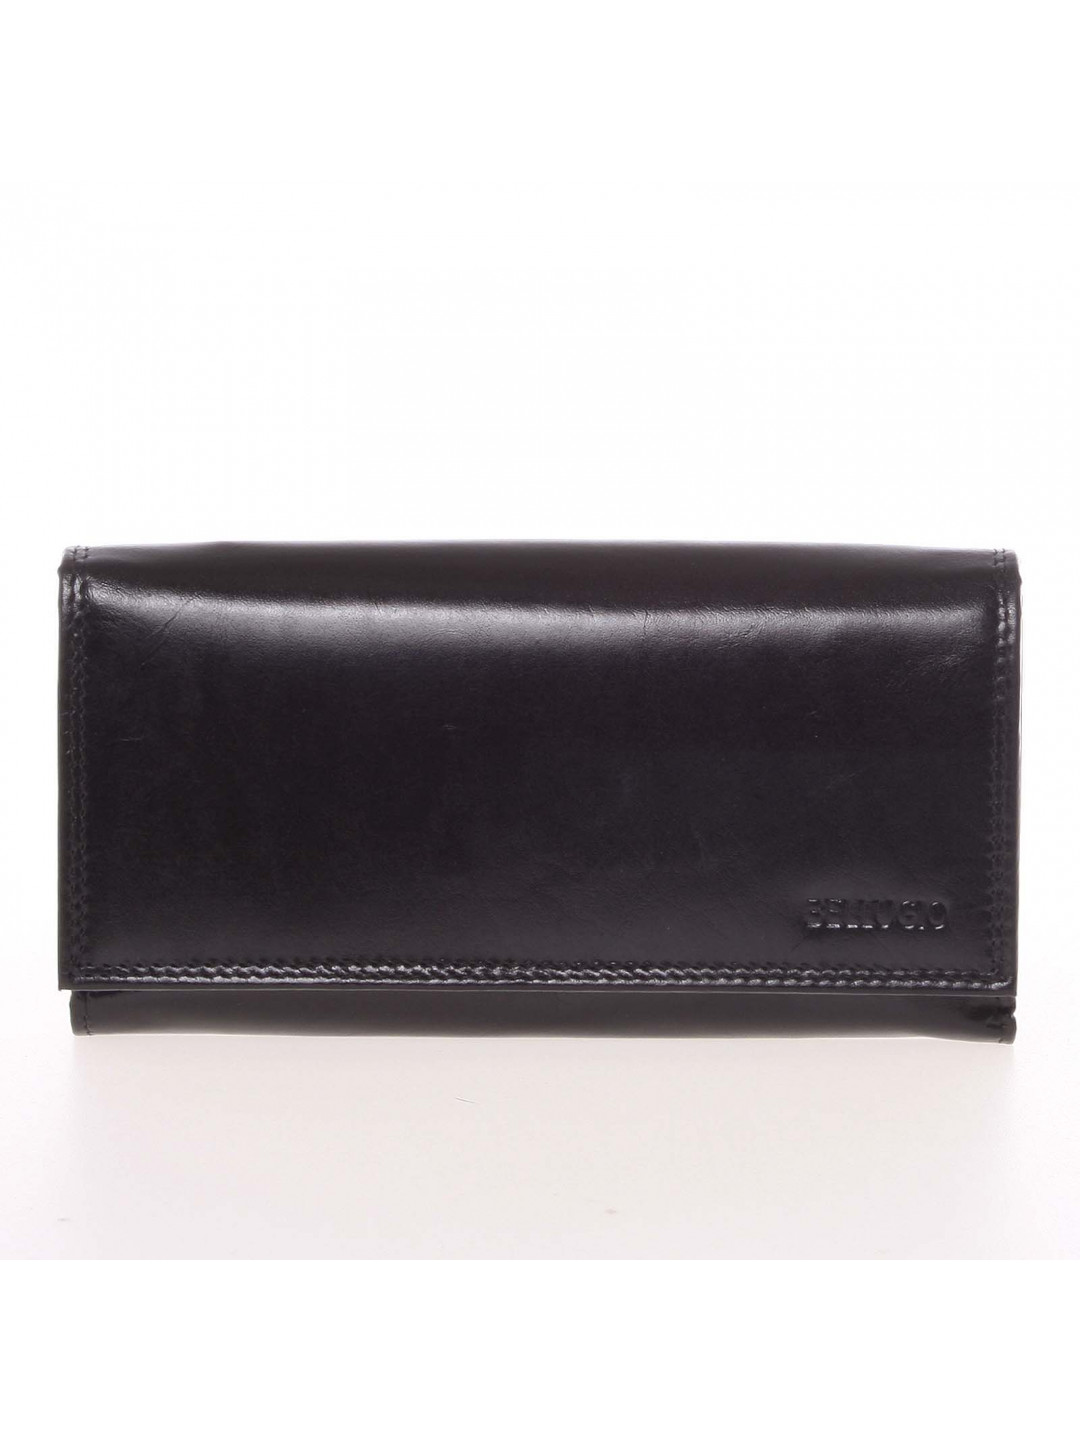 Velká dámská černá kožená peněženka – Bellugio Omega